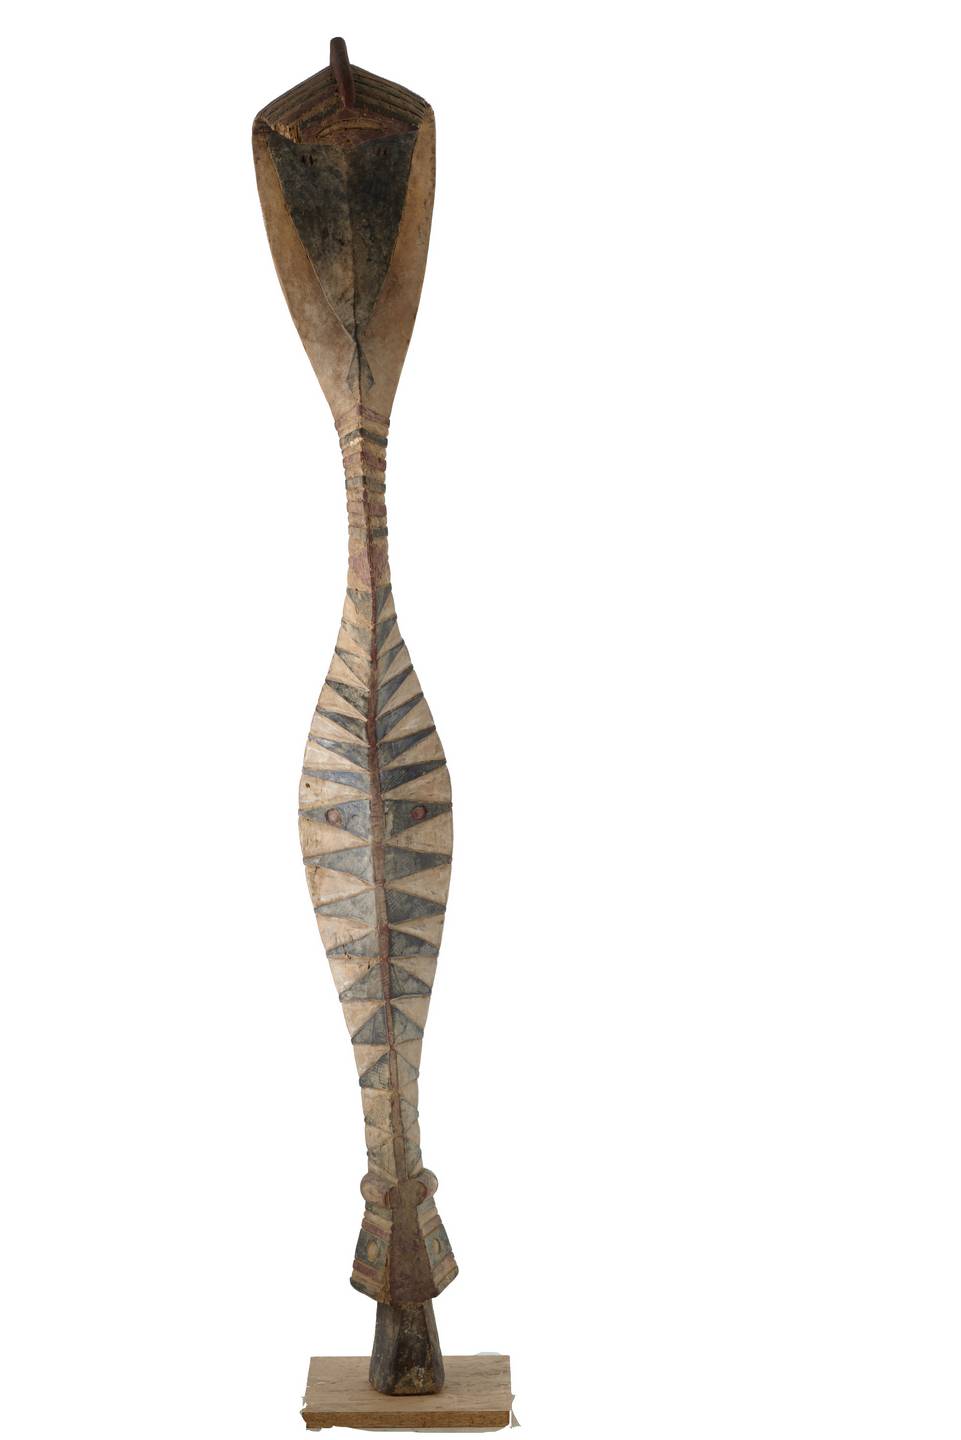 Baga (serpent) n°1978, d`afrique : Guinée-Bissau, statuette Baga (serpent) n°1978, masque ancien africain Baga (serpent) n°1978, art du Guinée-Bissau - Art Africain, collection privées Belgique. Statue africaine de la tribu des Baga (serpent) n°1978, provenant du Guinée-Bissau, n°1978 Cimier Baga en forme de serpent.Il représente l